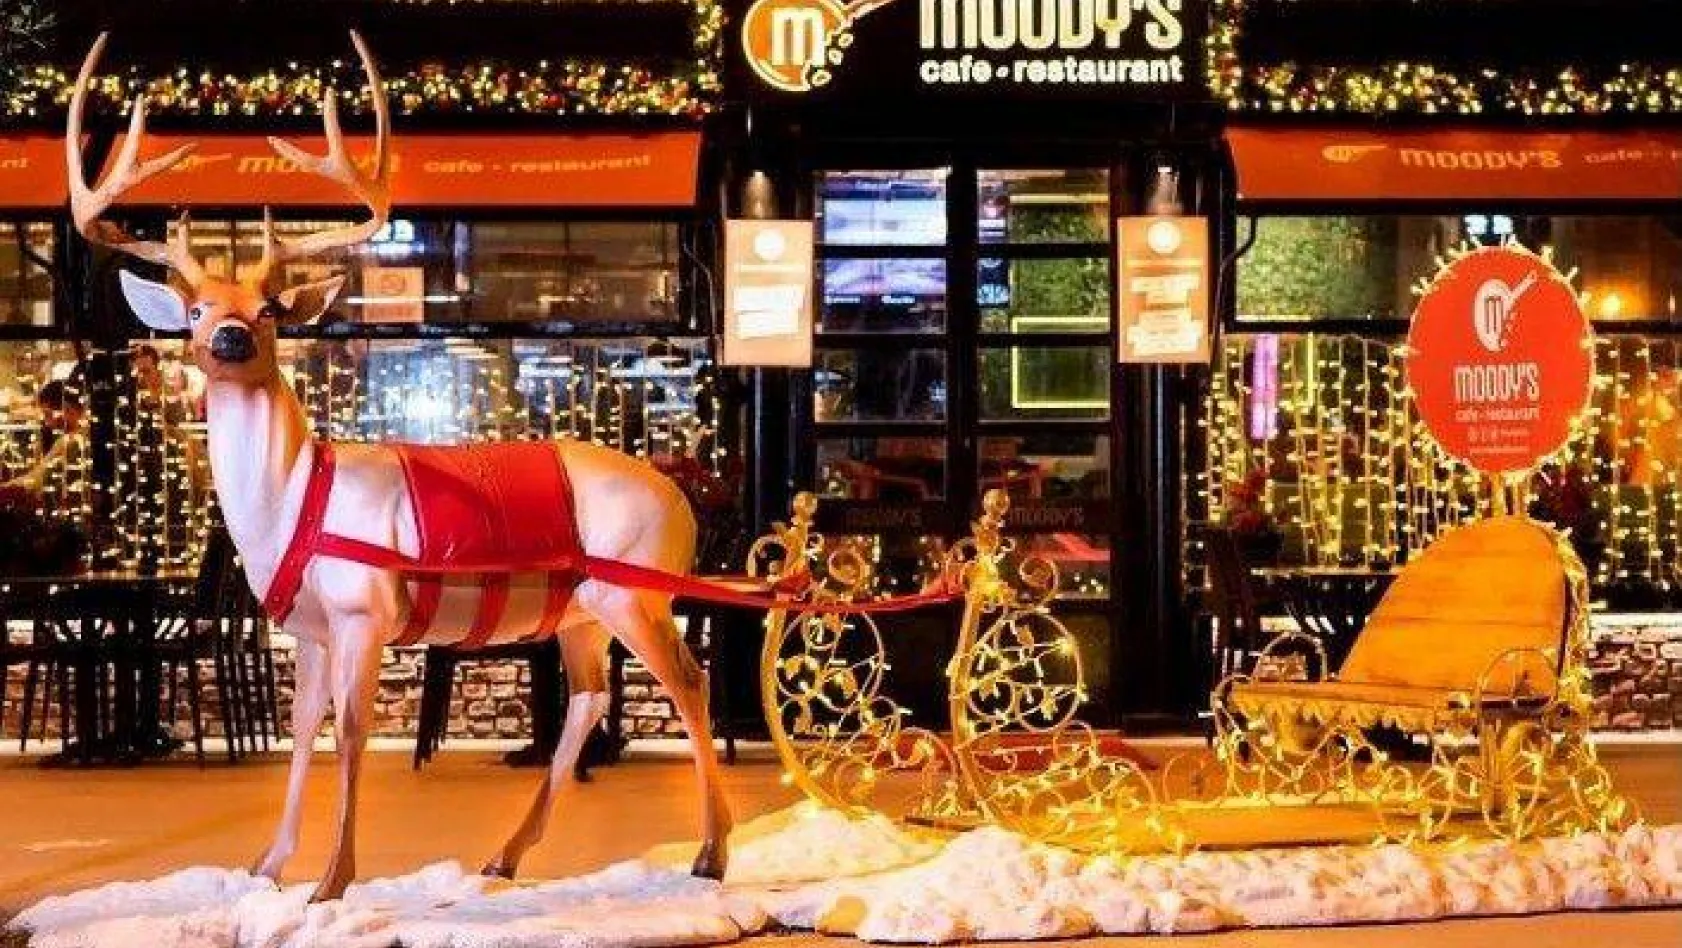 Moody's Cafe & Restaurant'ın yeni yıl sürprizi!